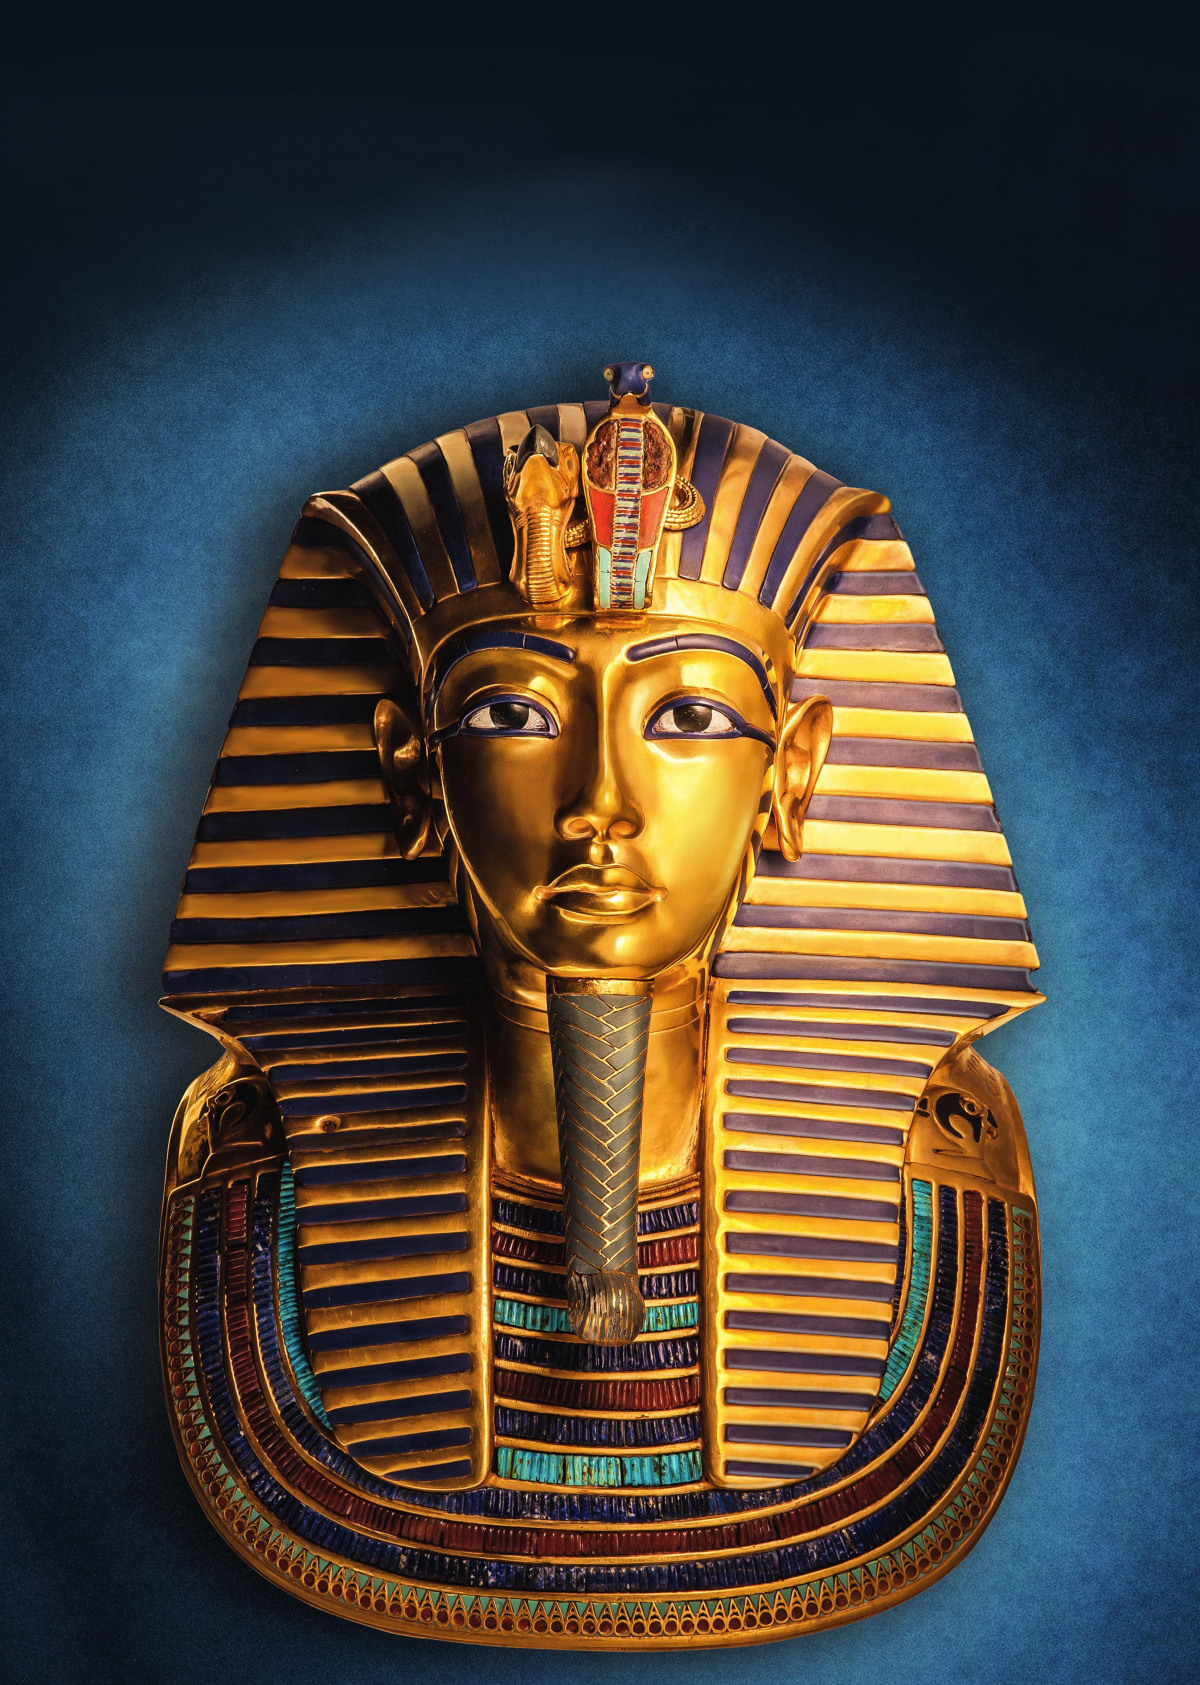 Grabentdeckung vor 99 Jahren: König Tutanchamun in den Reiss-Engelhorn-Museen in Mannheim